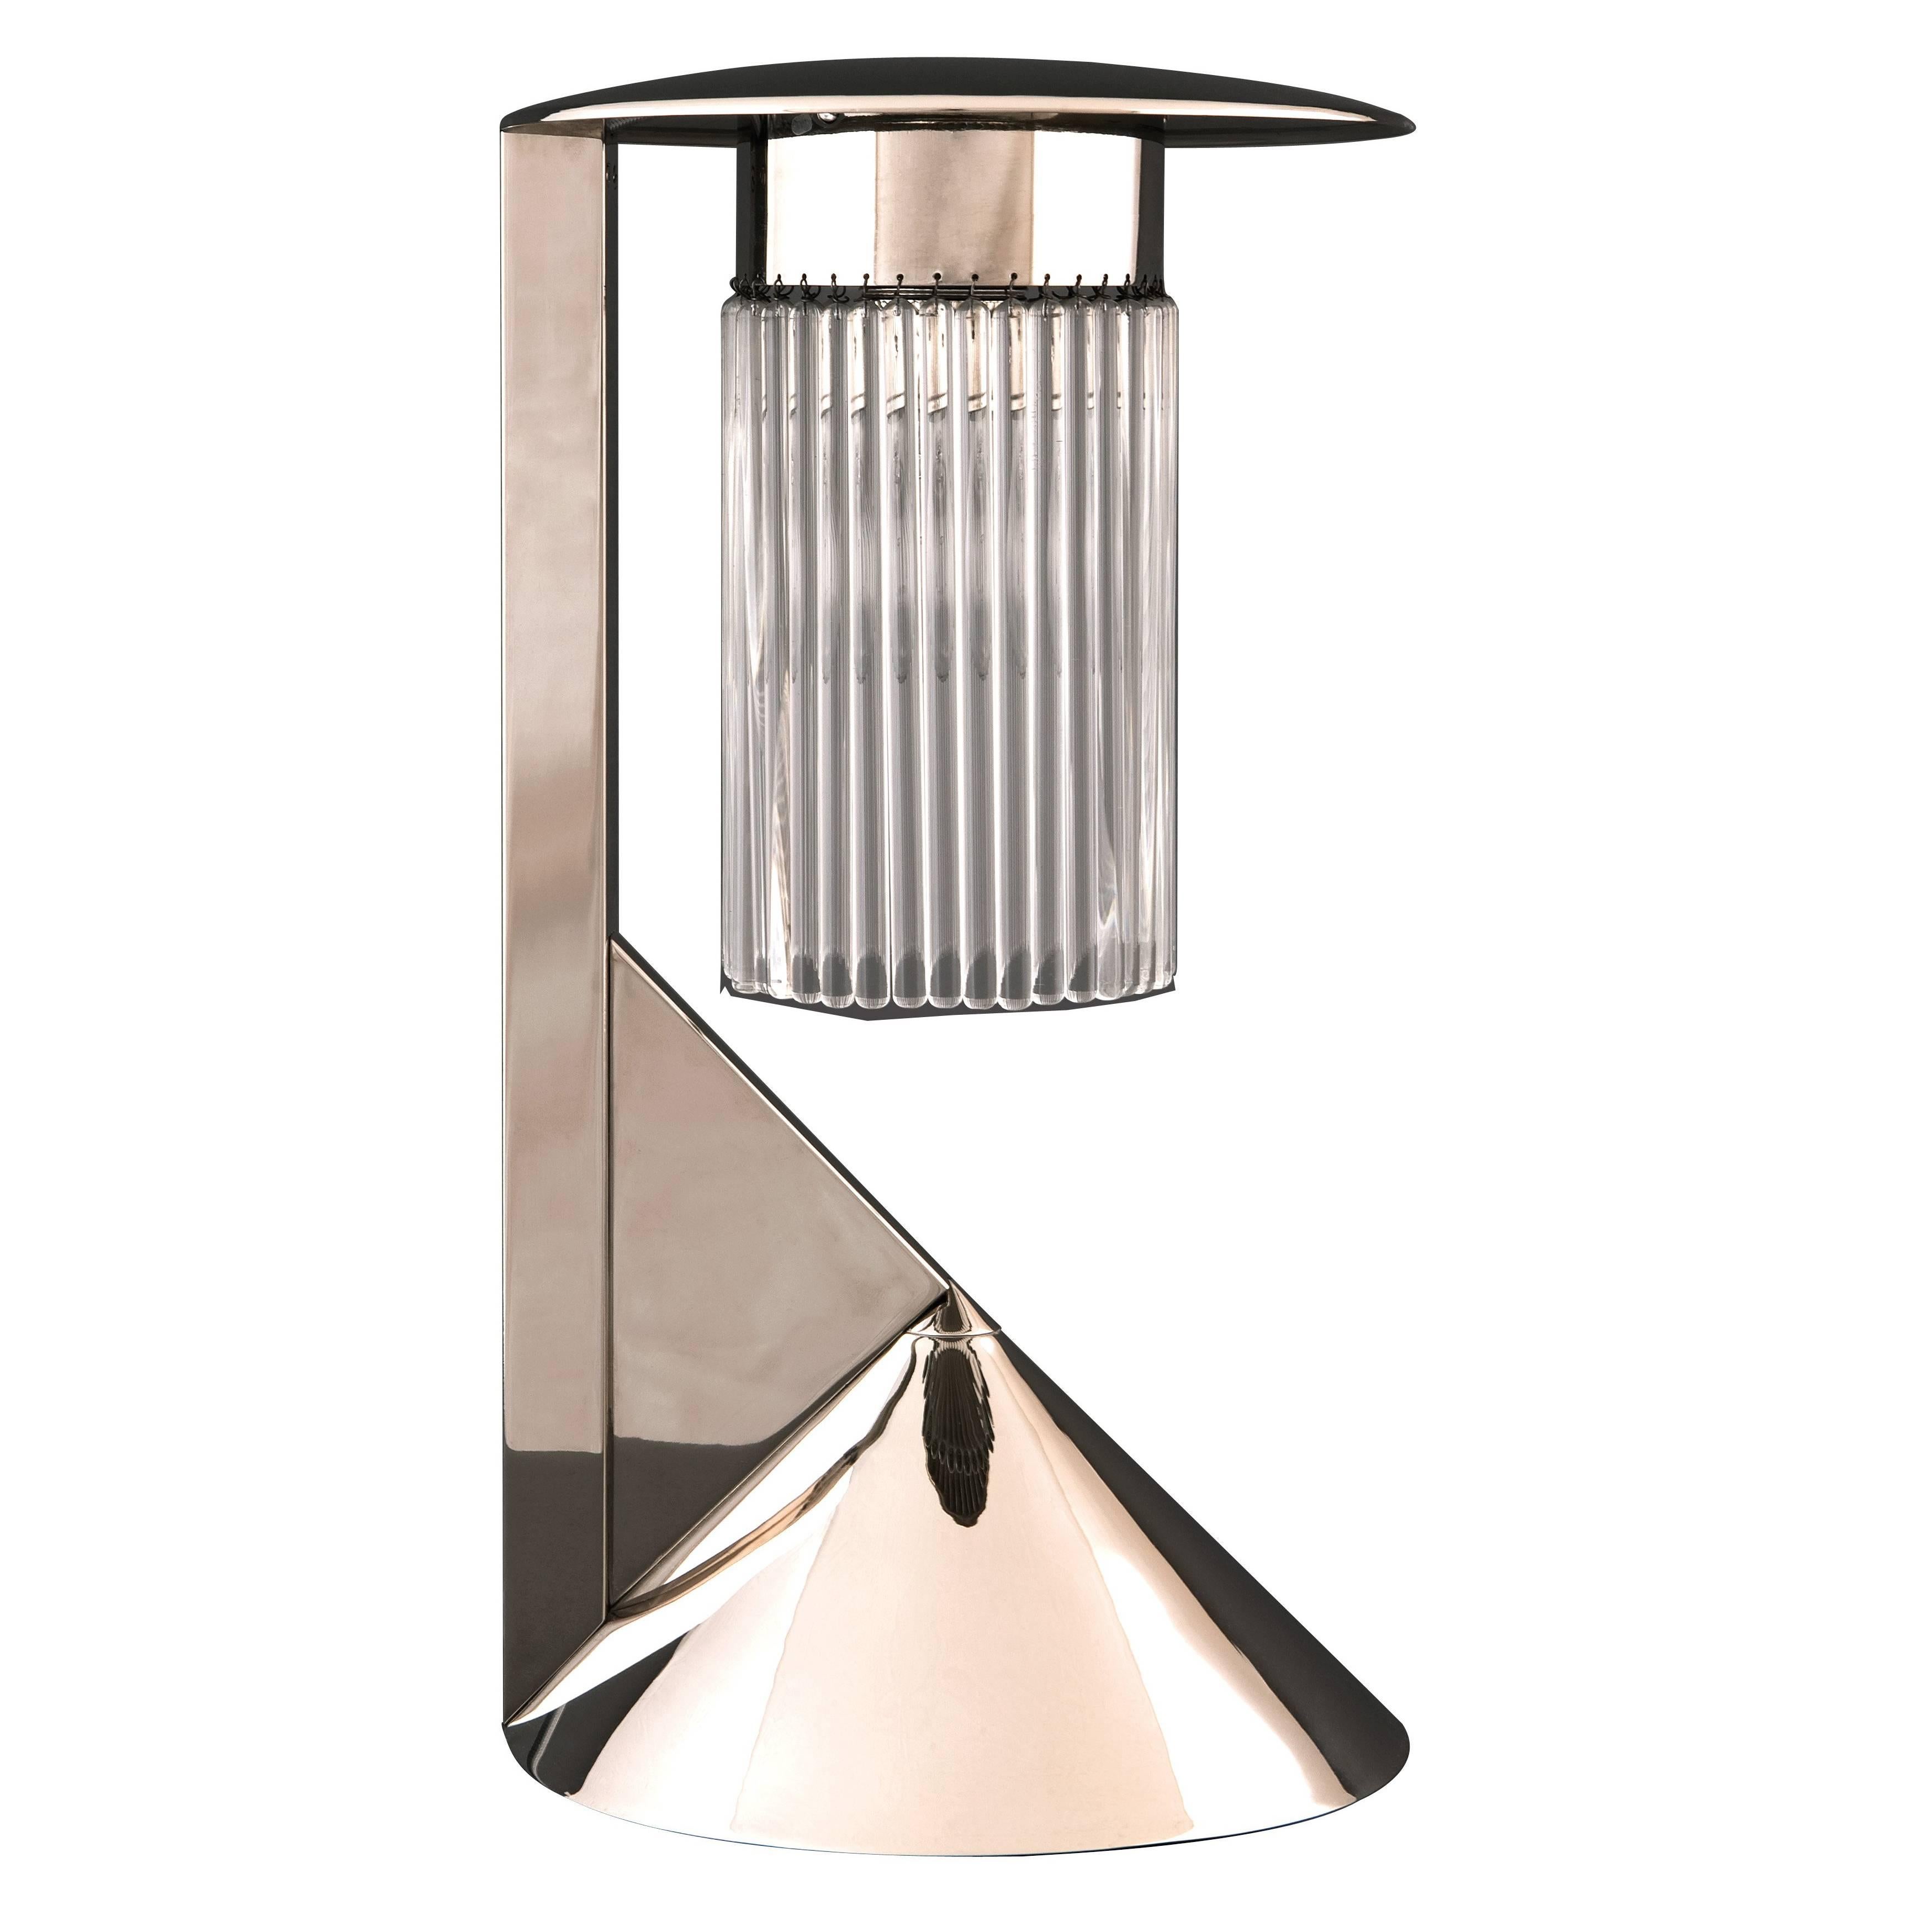 Koloman Moser & Wiener Werkstaette Jugendstil Table Lamp Re-Edition